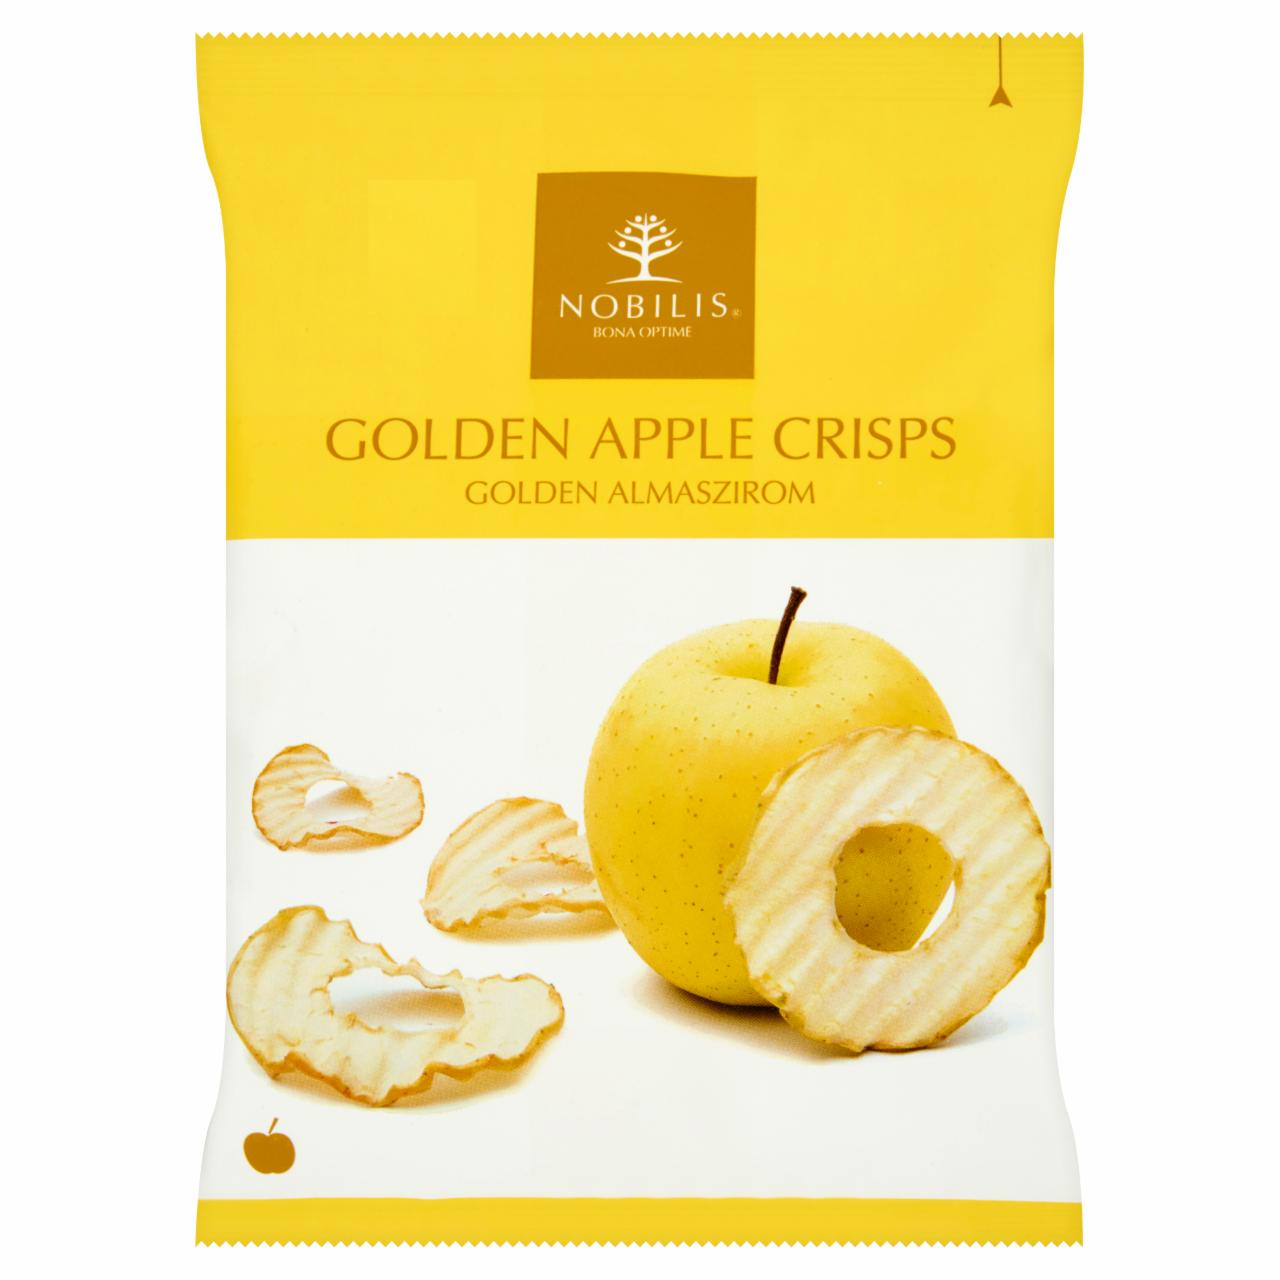 Képek - Nobilis szárított Golden almaszirom 20 g